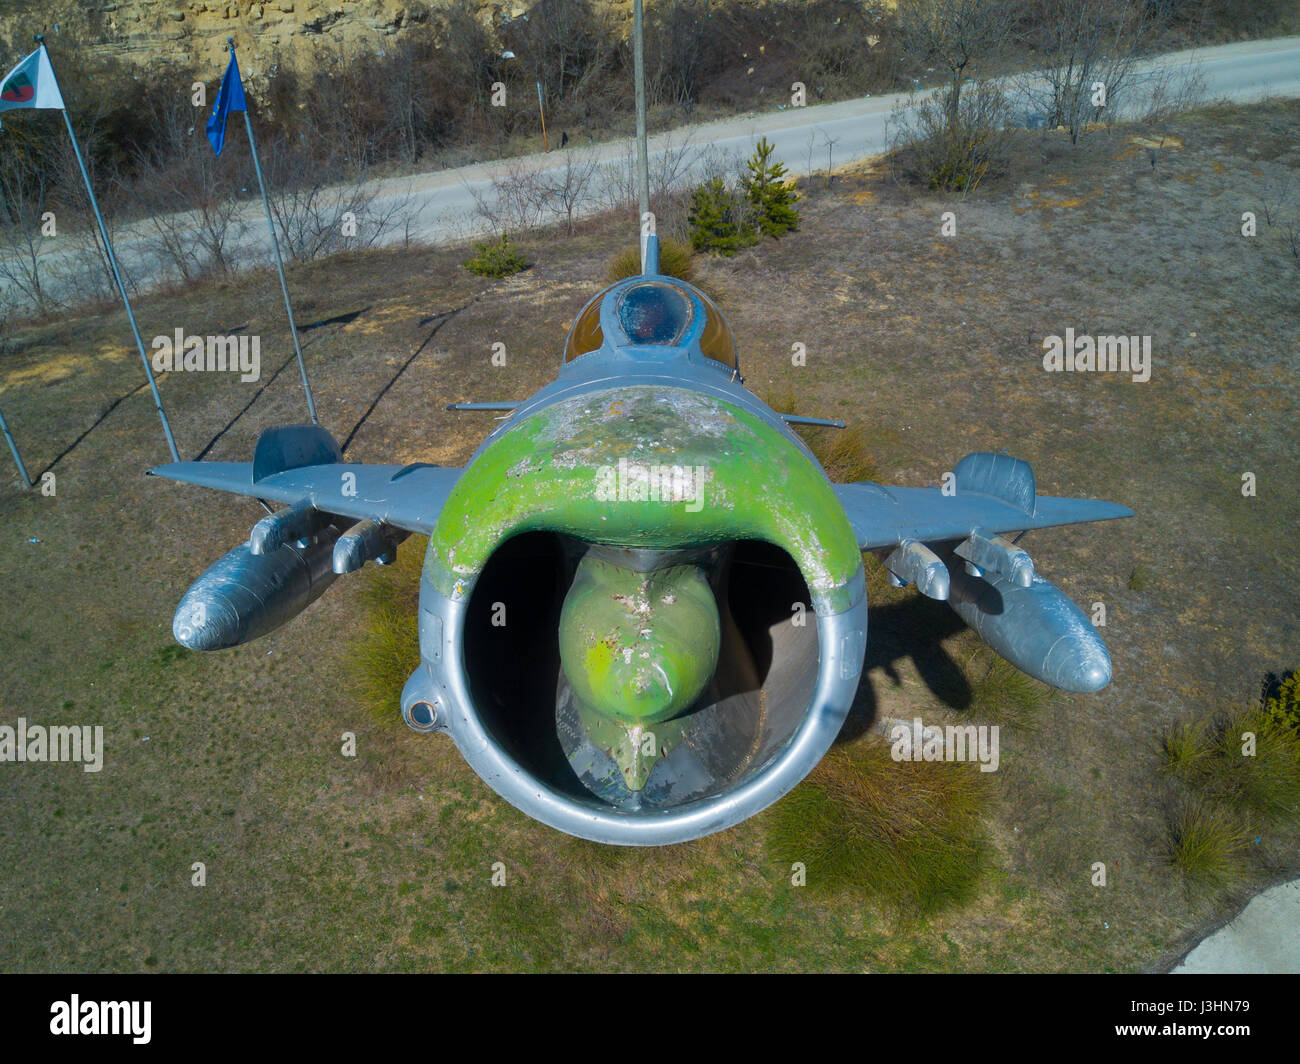 Une sélection d'images du parc de l'aviation et l'aéronautique en ville de Omurtag, Bulgarie. Le parc est un musée en plein air complexe dédié à l'aviation et l'aéronautique en Bulgarie. Doté d''atmosphère : où : Omurtag, Bulgarie Quand : 04 Avr 2017 Banque D'Images